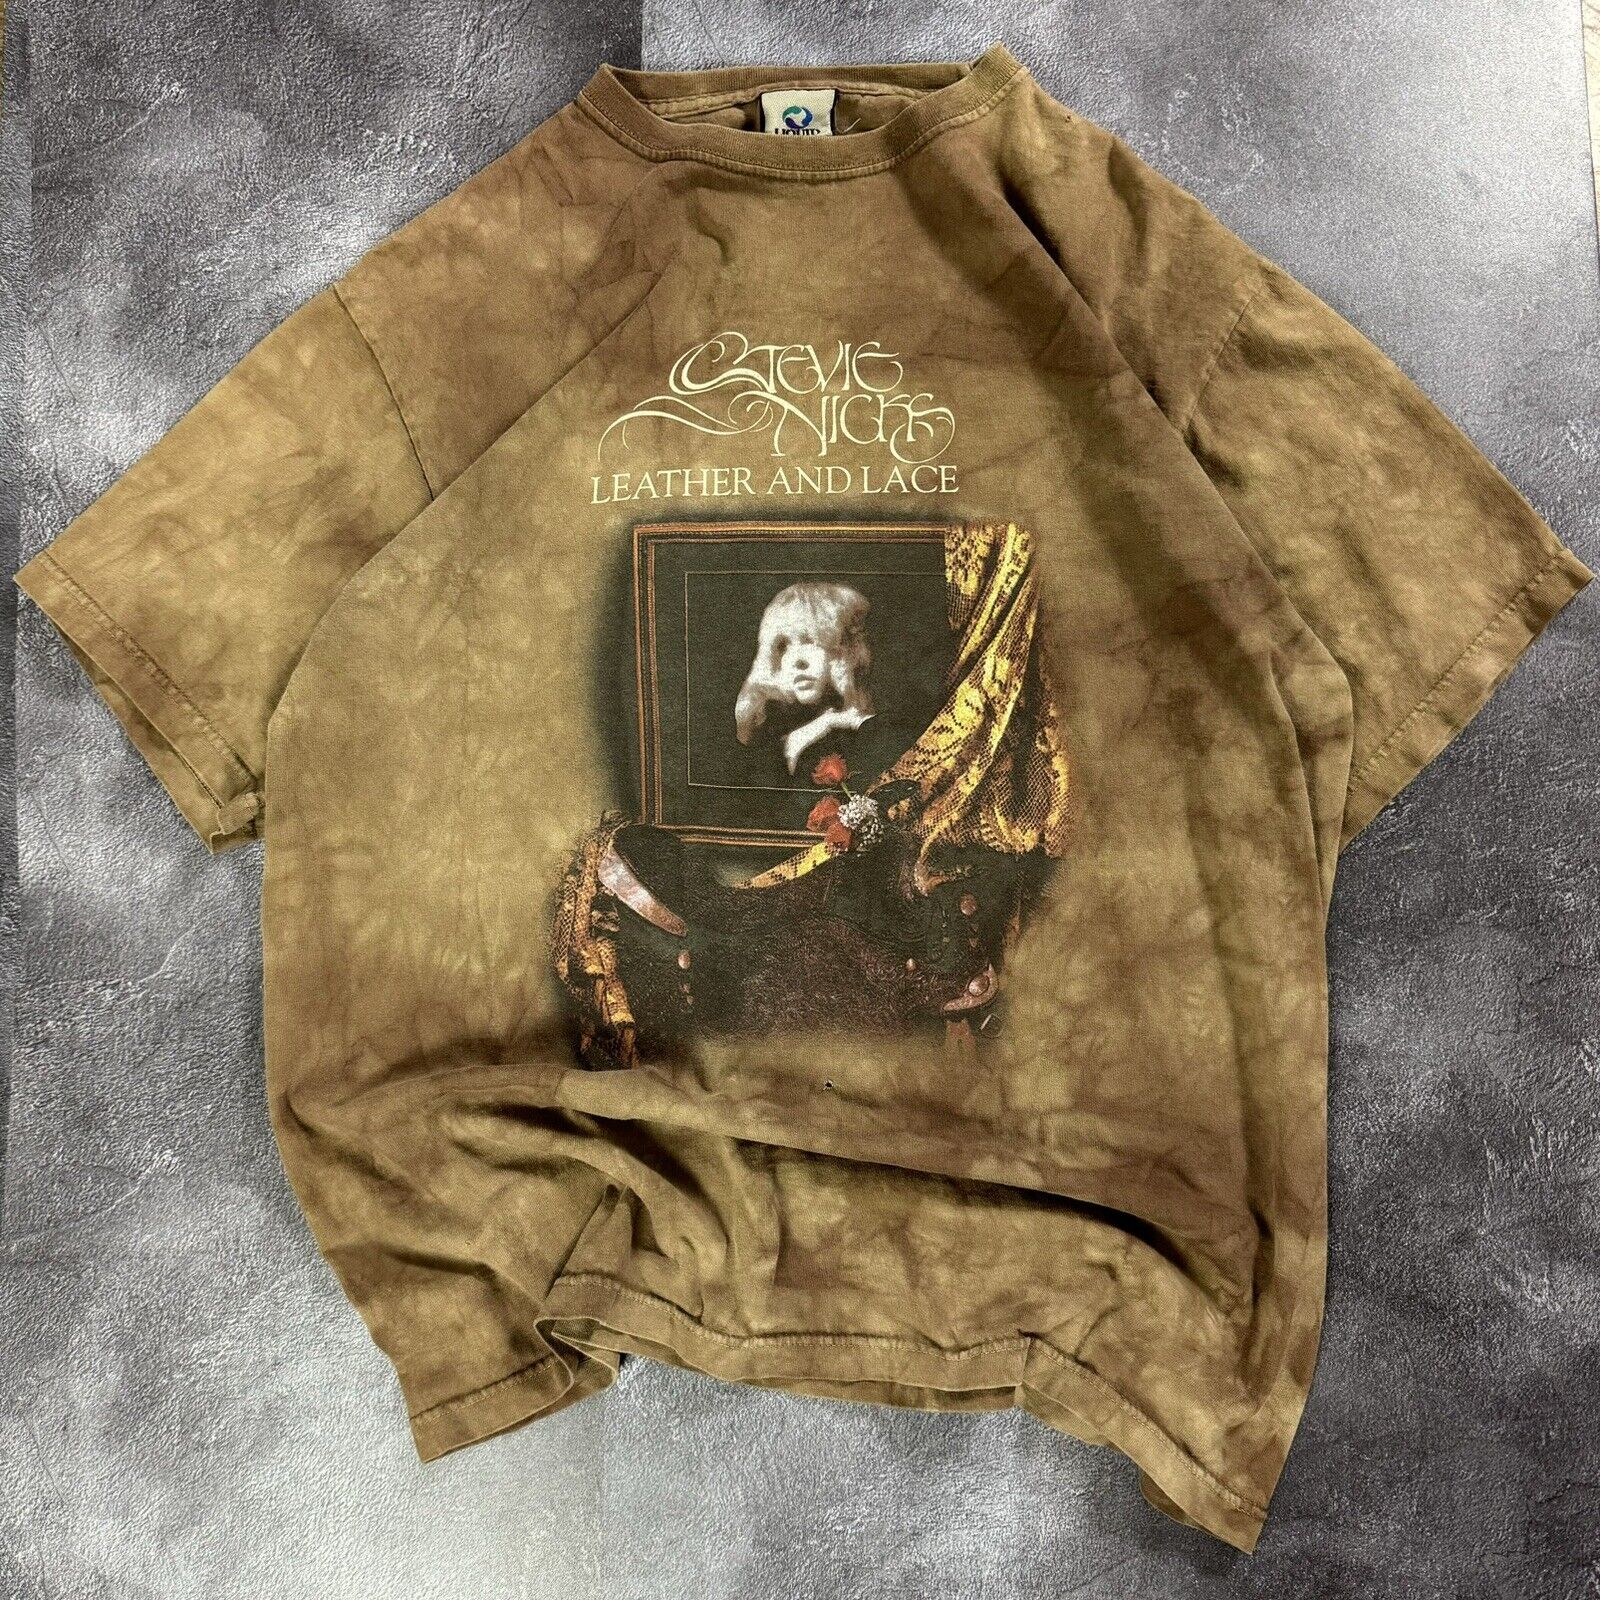 Vintage Stevie Nicks Leather & lace Concert Tour T-Shirt Size L fleetwood mac L